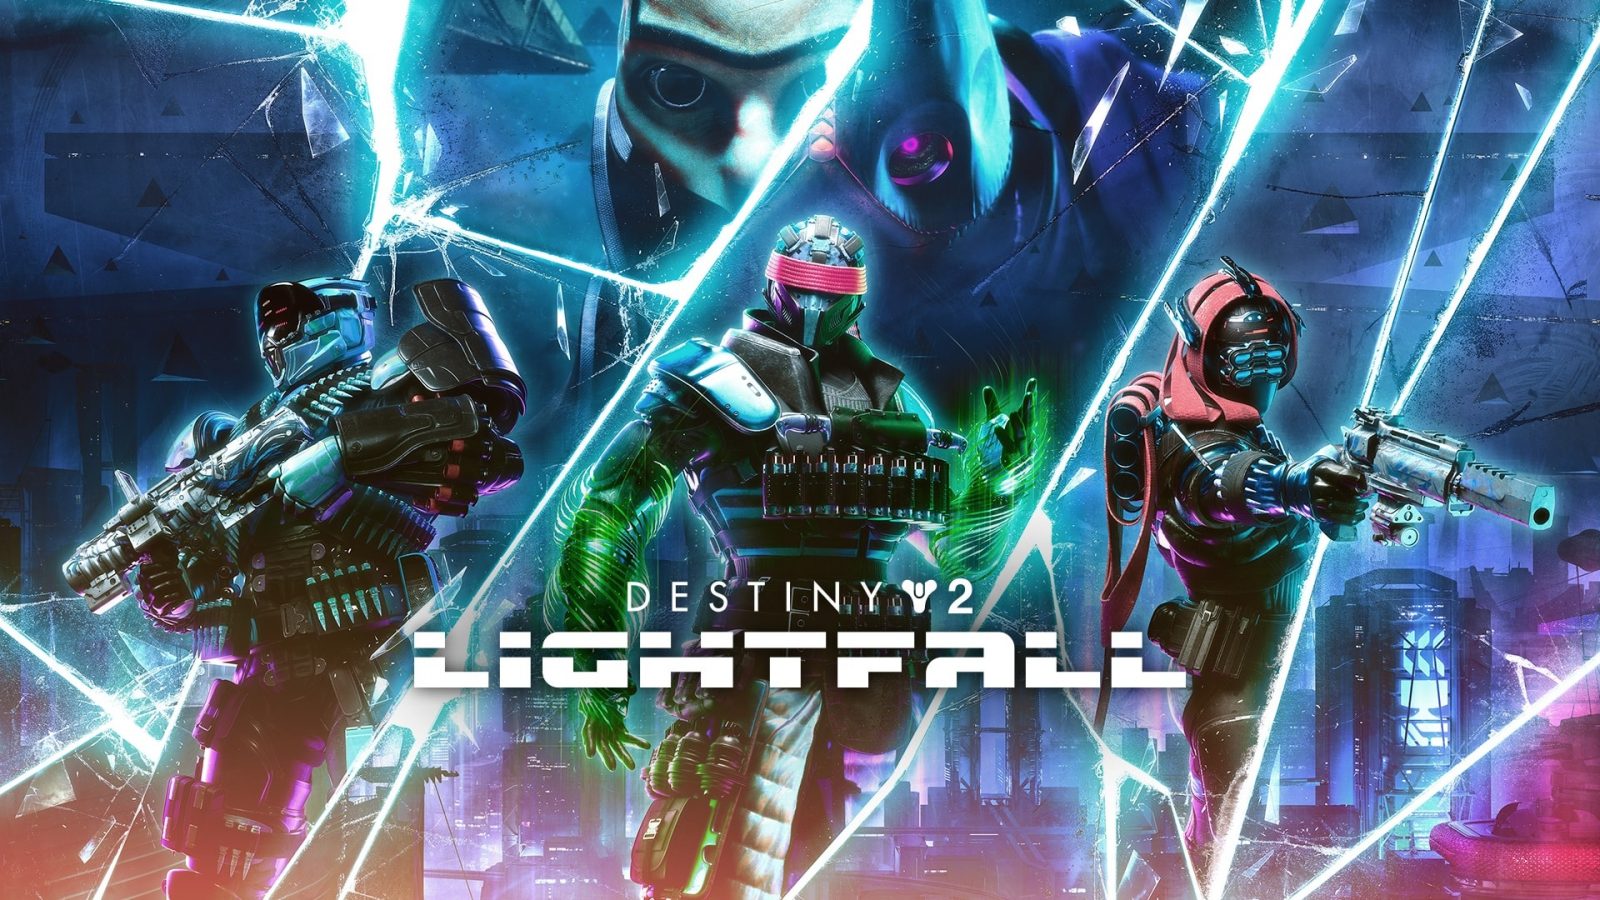 Destiny 2 Lightfall Key Art som visar nyckelkaraktärer bakom utvidgningen